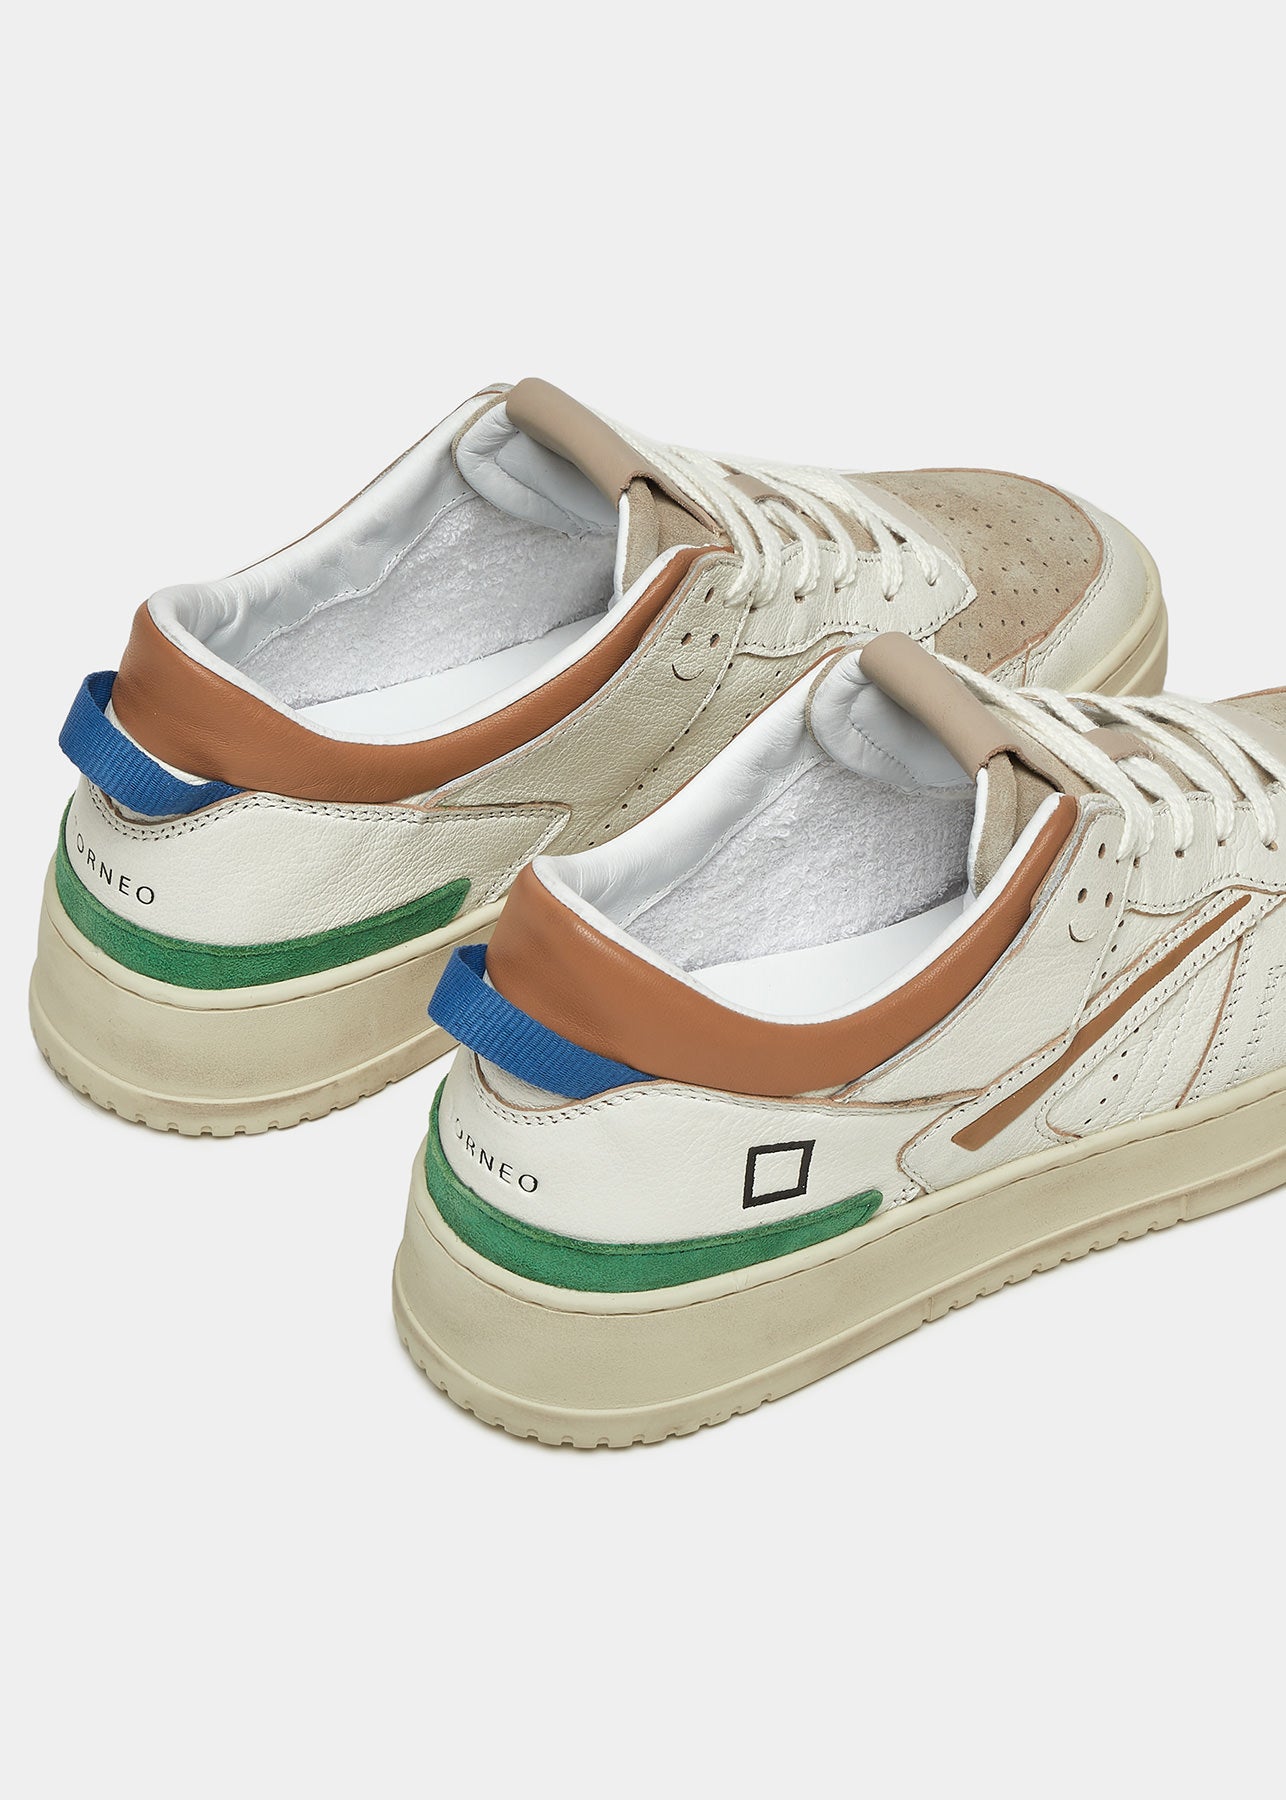 Sneaker Tornero Colored in Pelle / Bianco - Ideal Moda